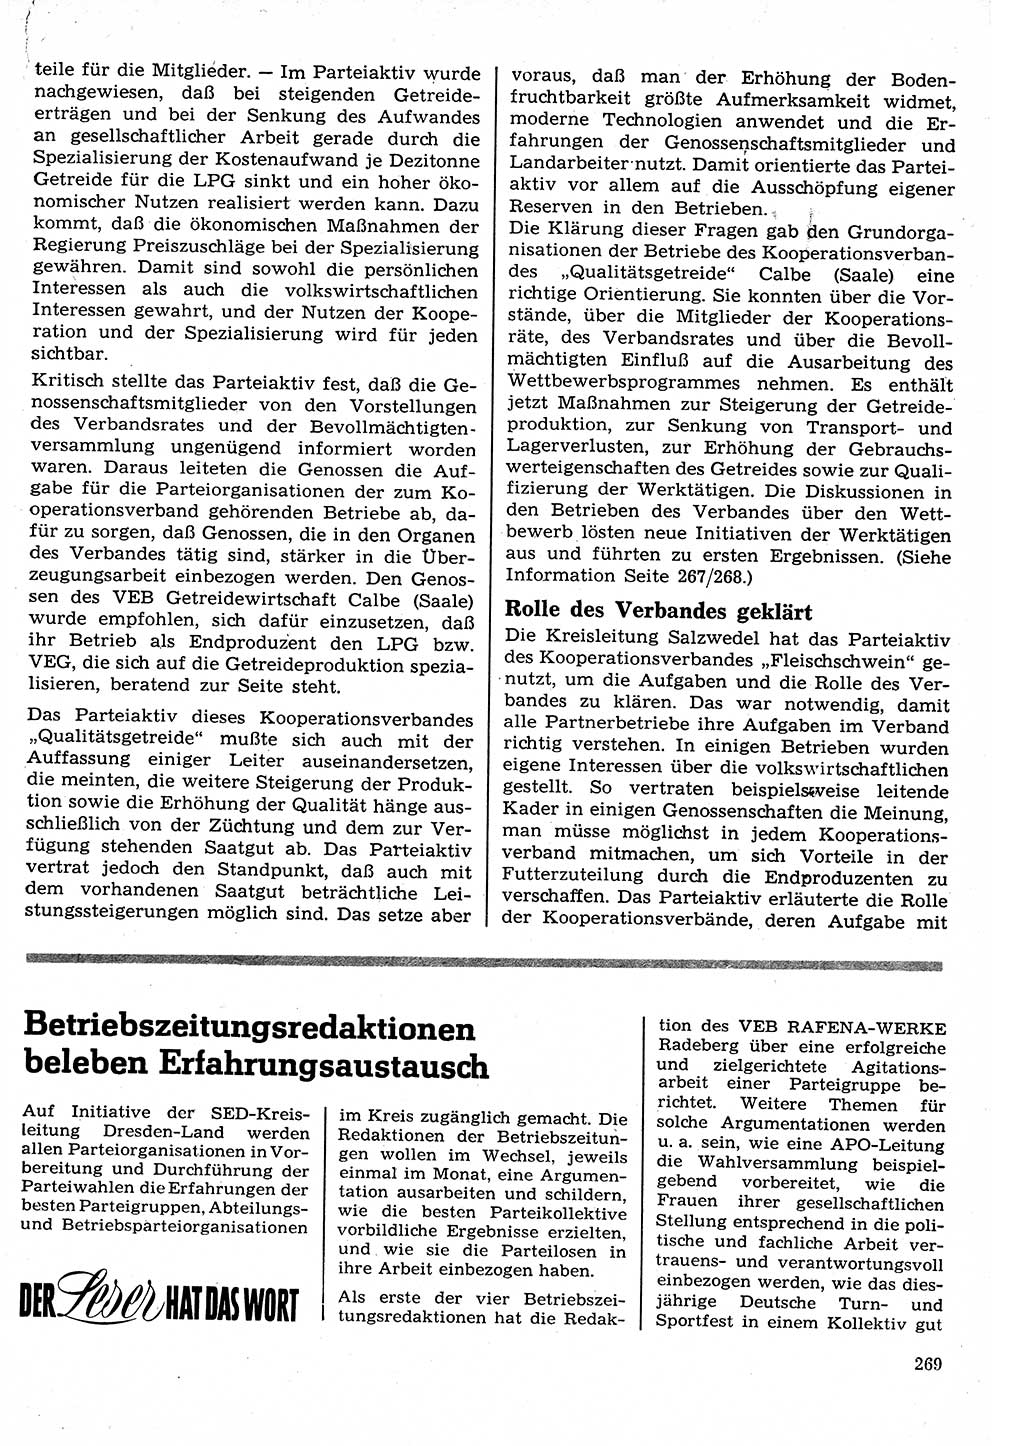 Neuer Weg (NW), Organ des Zentralkomitees (ZK) der SED (Sozialistische Einheitspartei Deutschlands) für Fragen des Parteilebens, 24. Jahrgang [Deutsche Demokratische Republik (DDR)] 1969, Seite 269 (NW ZK SED DDR 1969, S. 269)